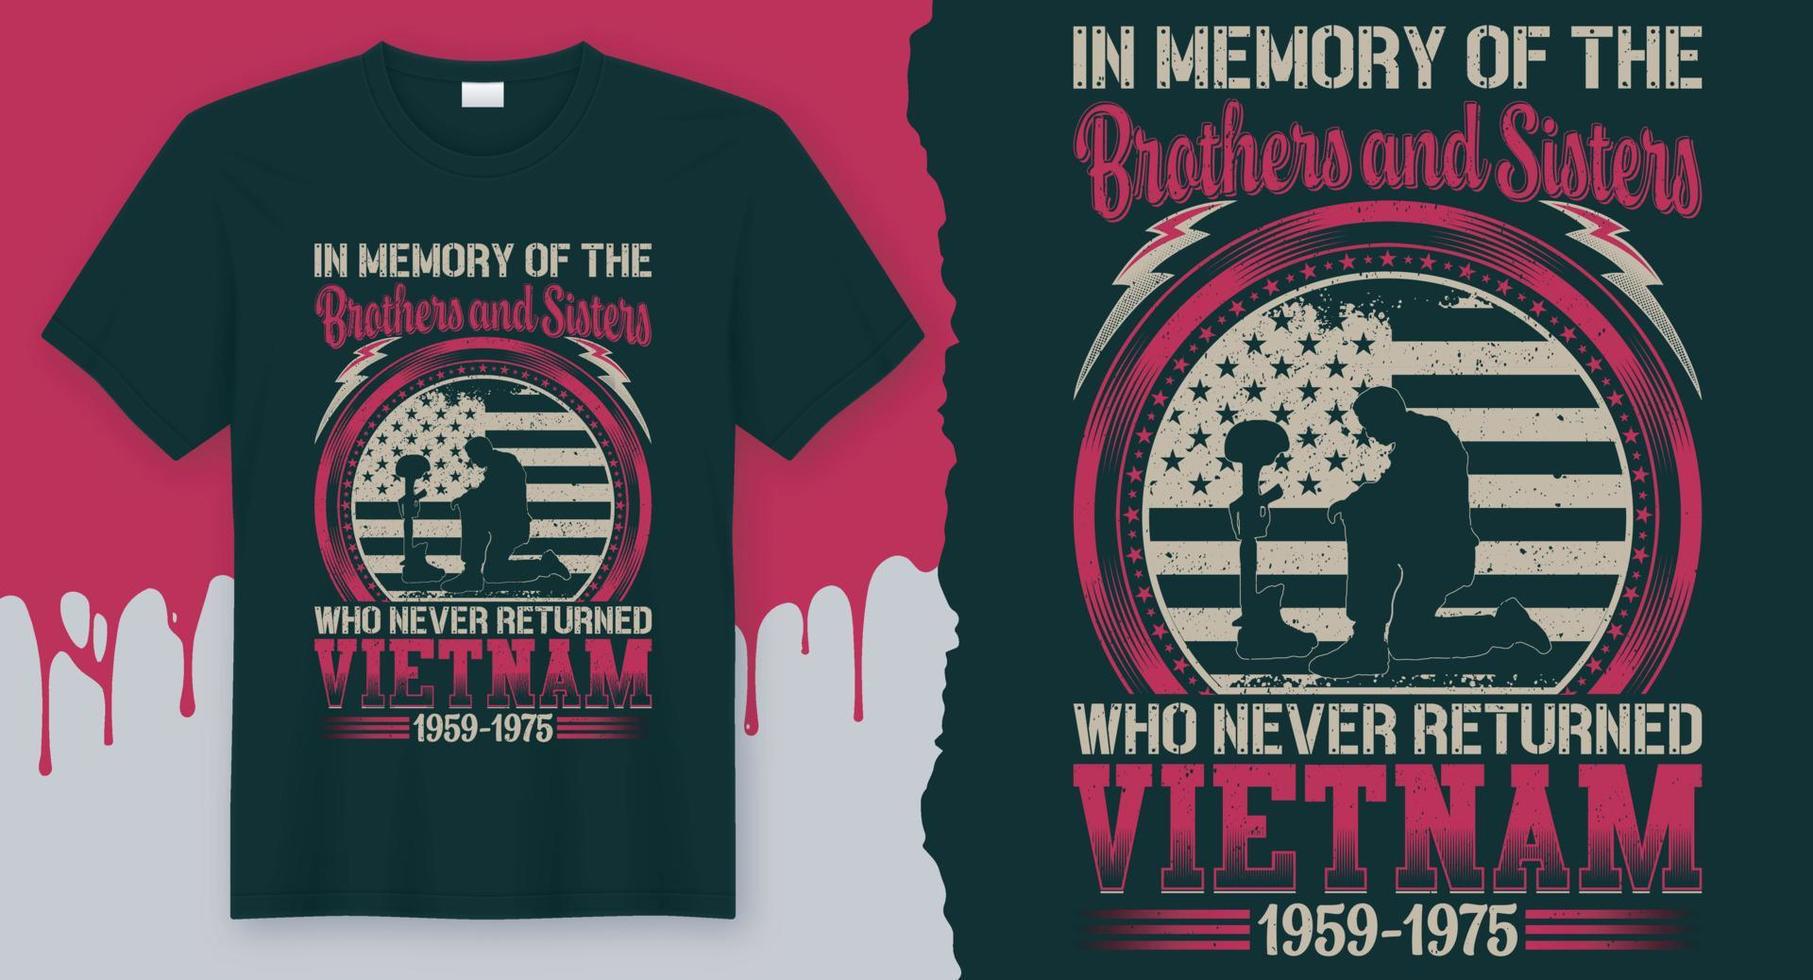 i minne av de bröder och systrar vem aldrig returnerad vietnam 1959-1975. veteran- t-shirt design vektor för veteraner dag